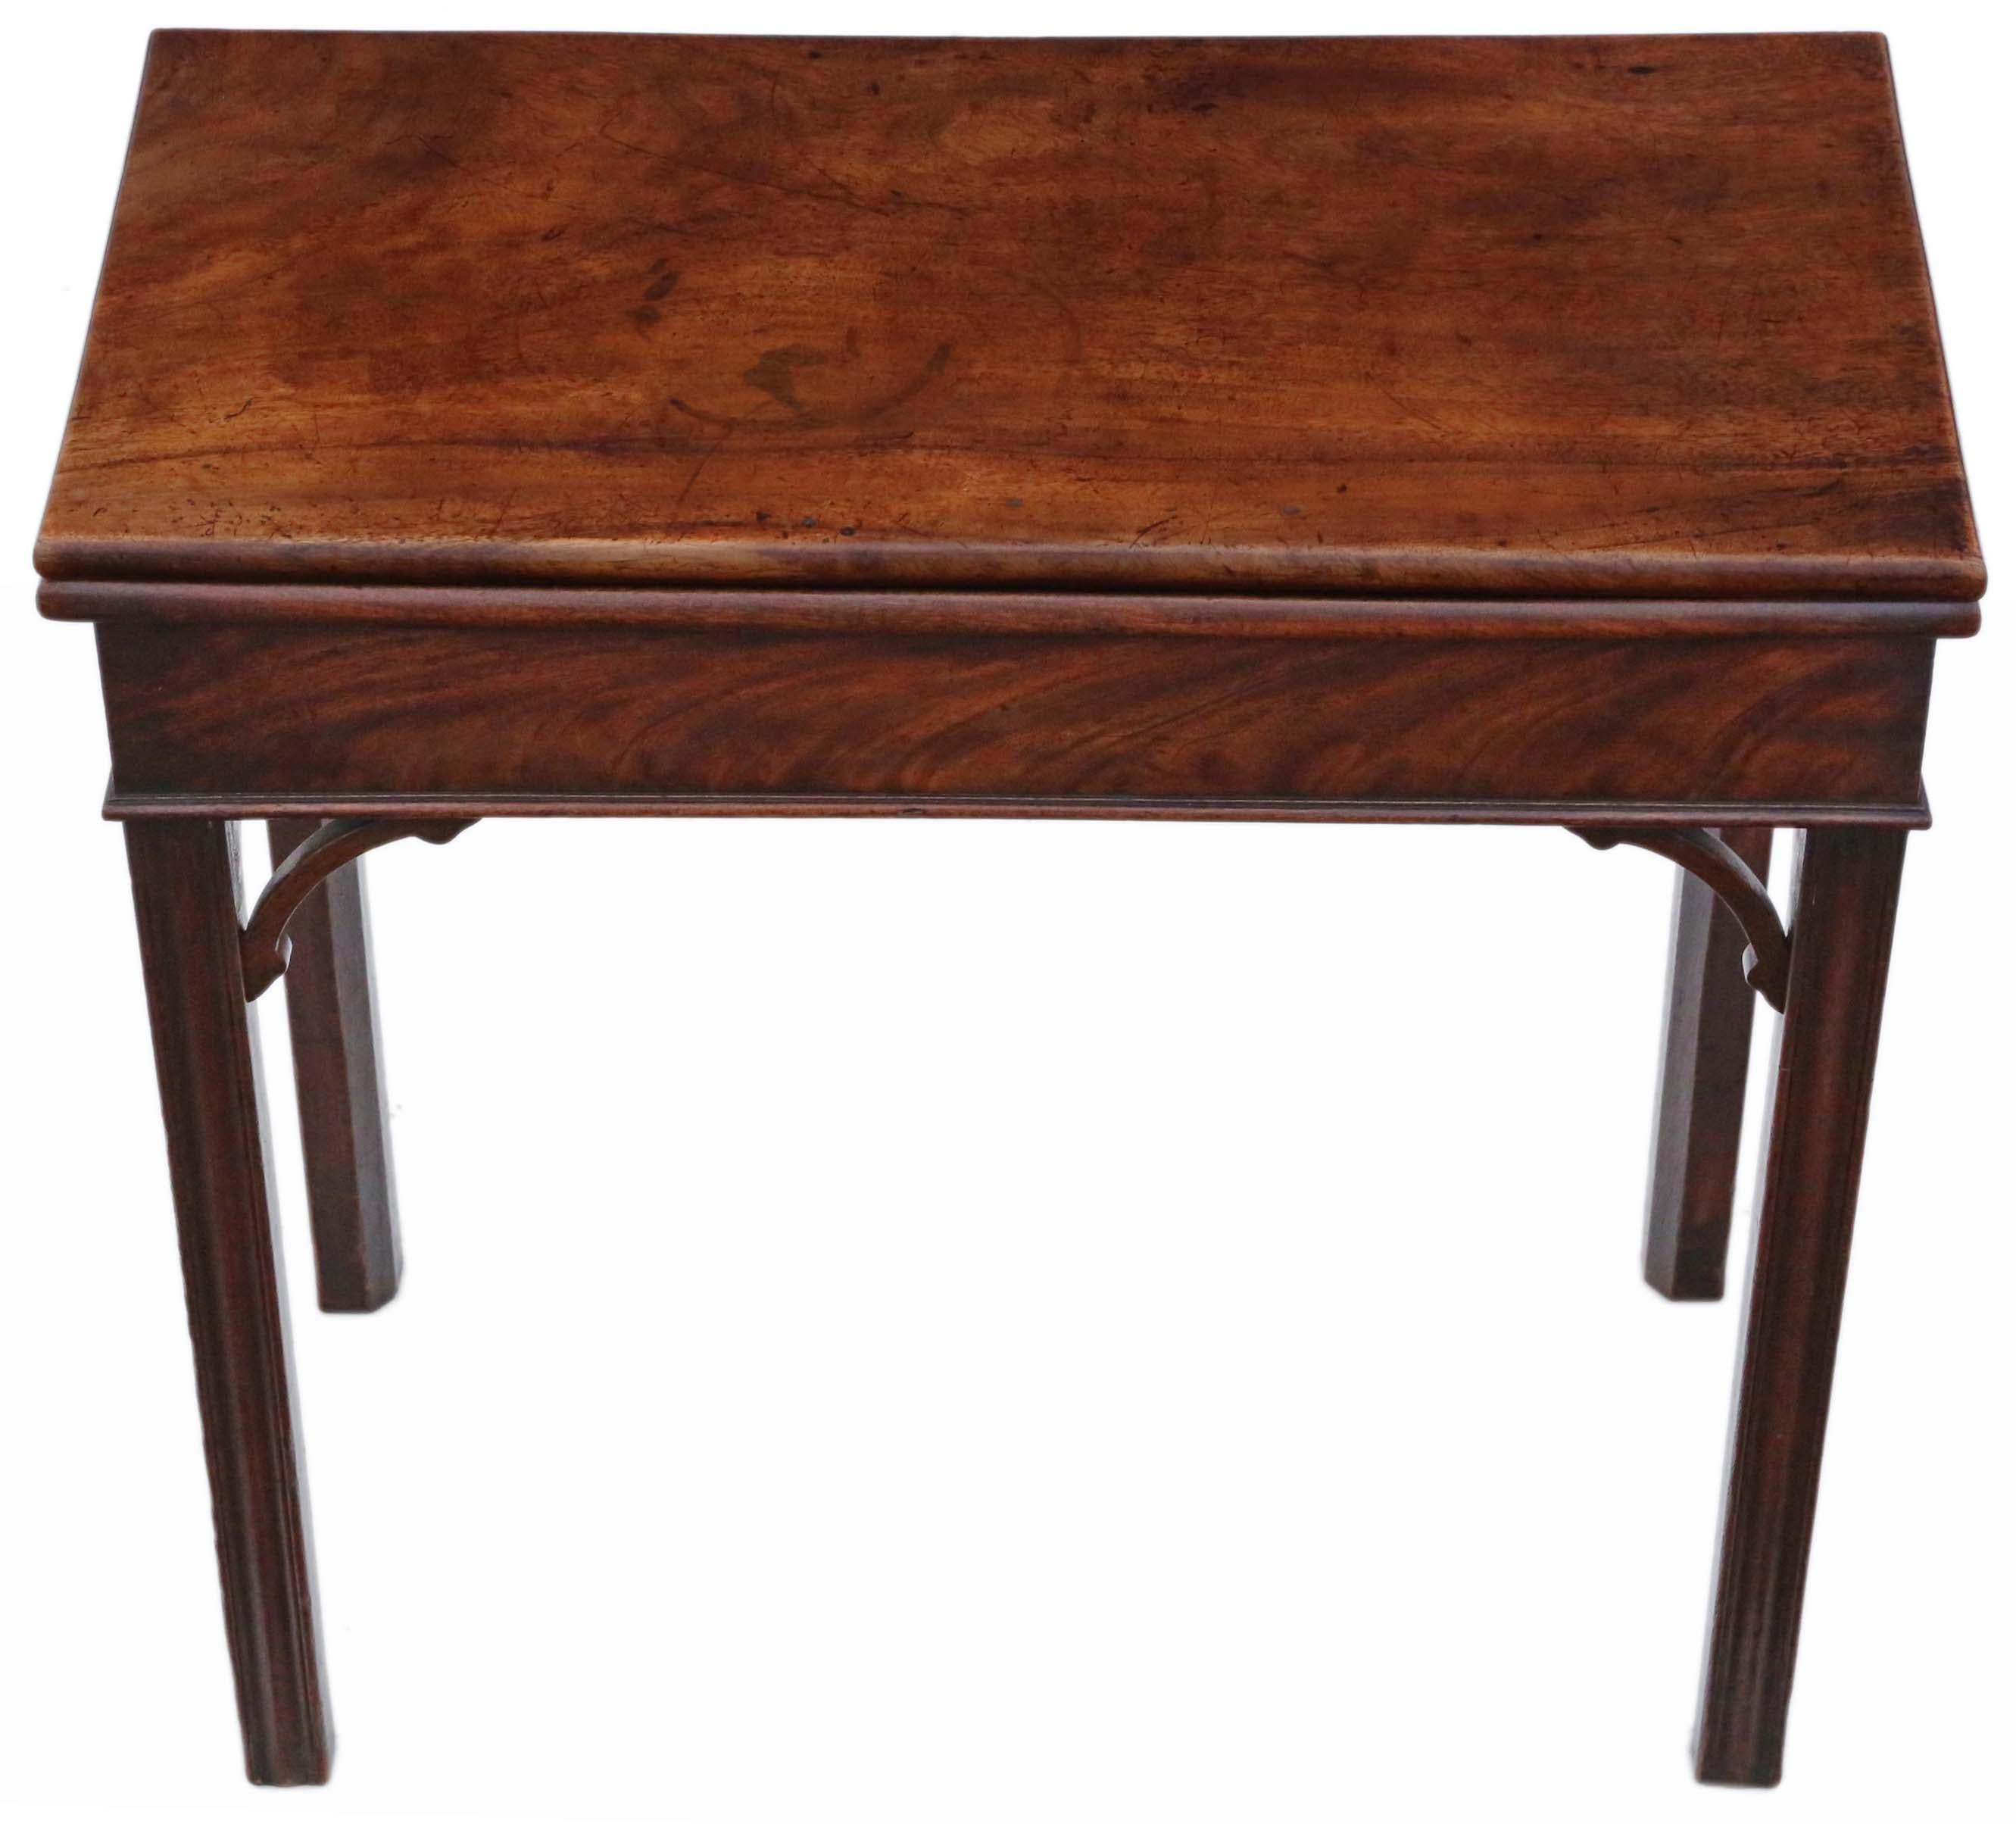 Table console pour le thé en acajou de qualité antique, de style géorgien du 18e siècle C1790, avec cartes pliantes. Jolies petites dimensions compactes.

Pas de joints lâches.

La table a une couleur et une patine magnifiques.

Charmant